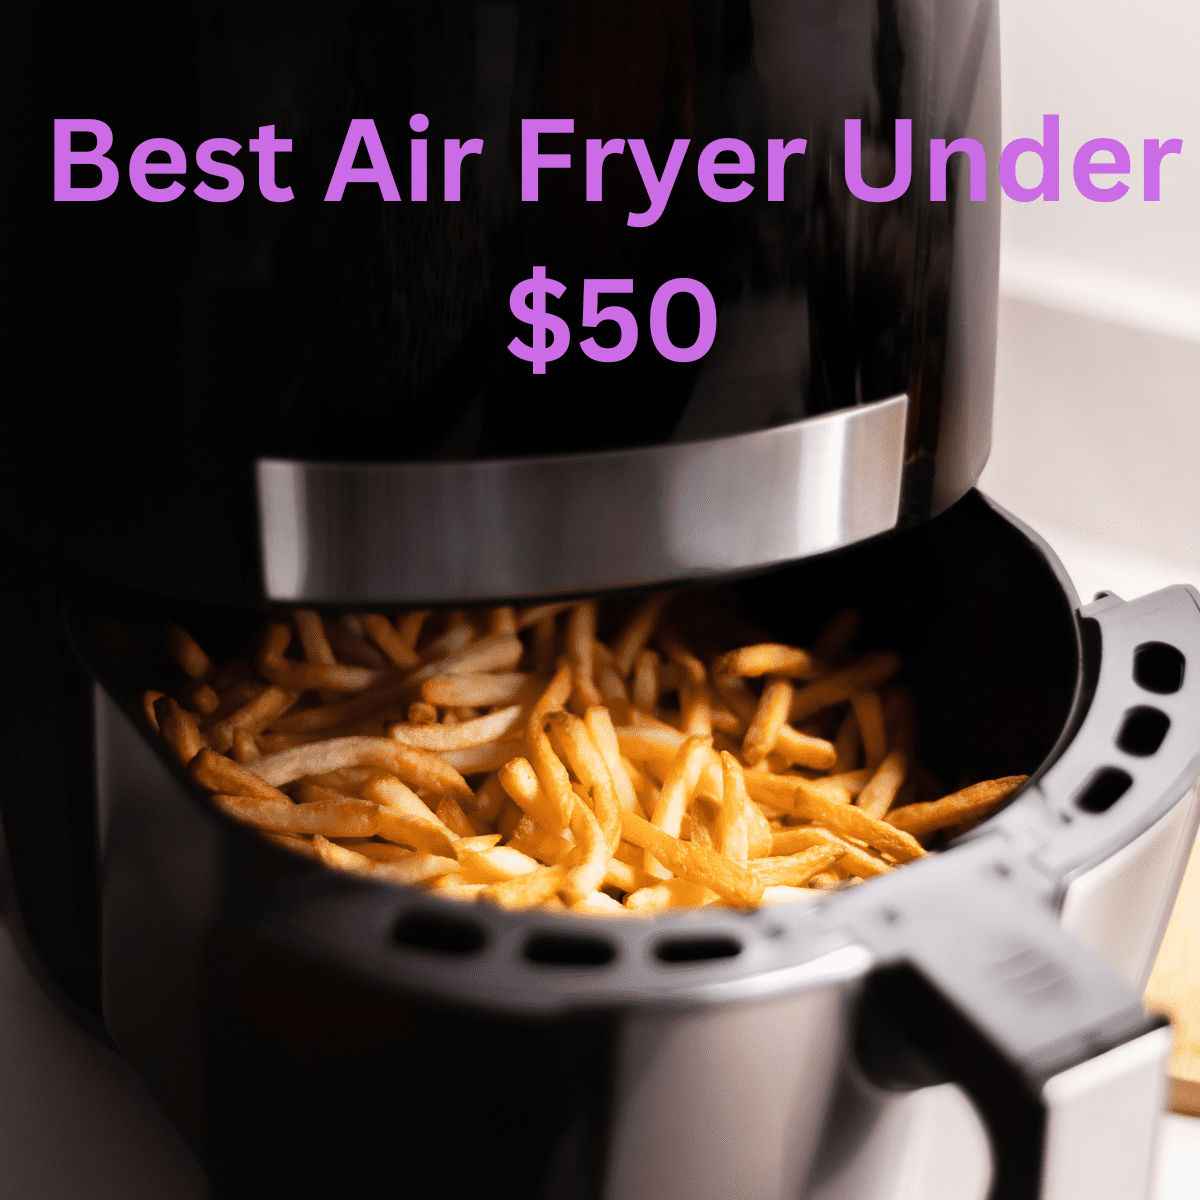 Best kitchen deals: Get a Bella Pro Air Fryer for less than $50